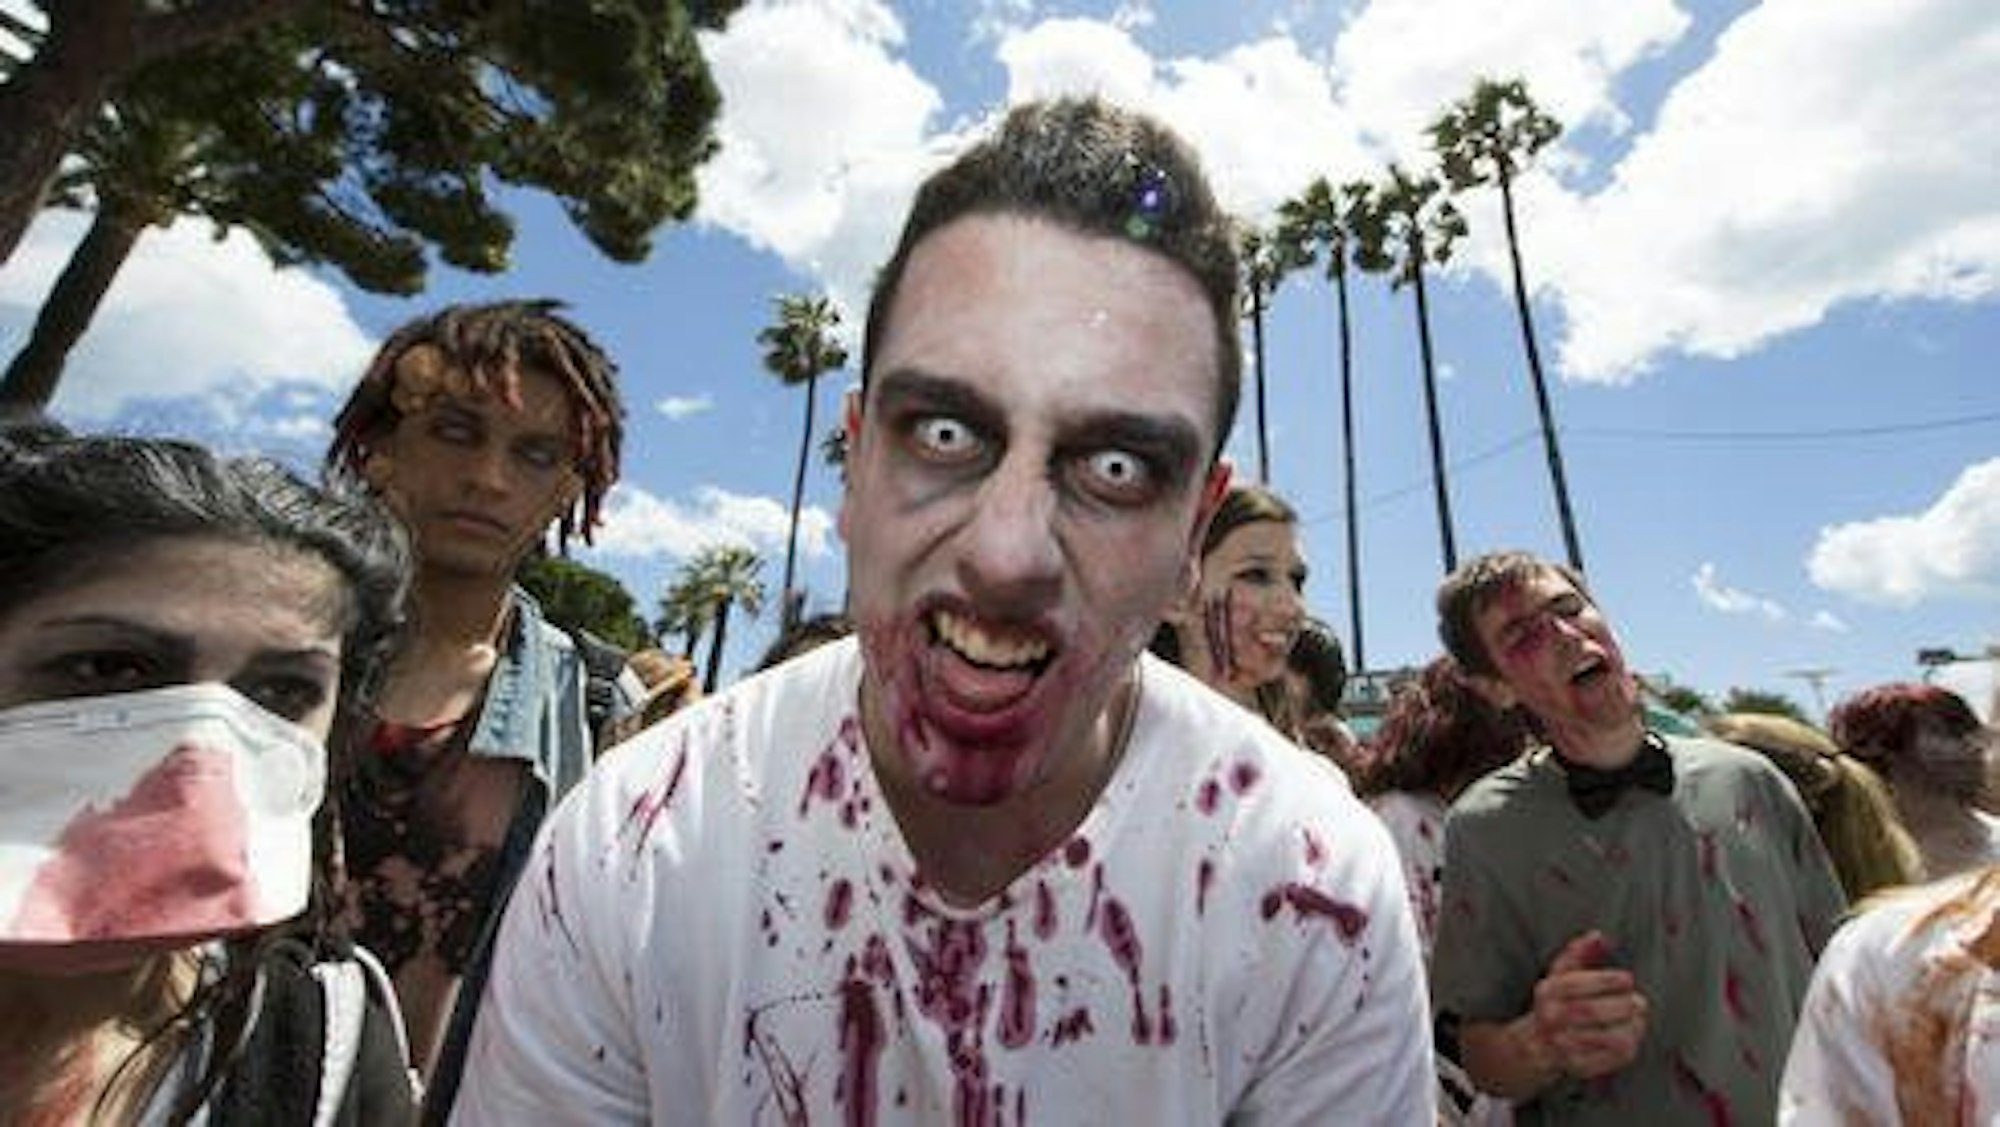 Zombie bei der Arbeit: Leute erschrecken für den Lebensunterhalt.